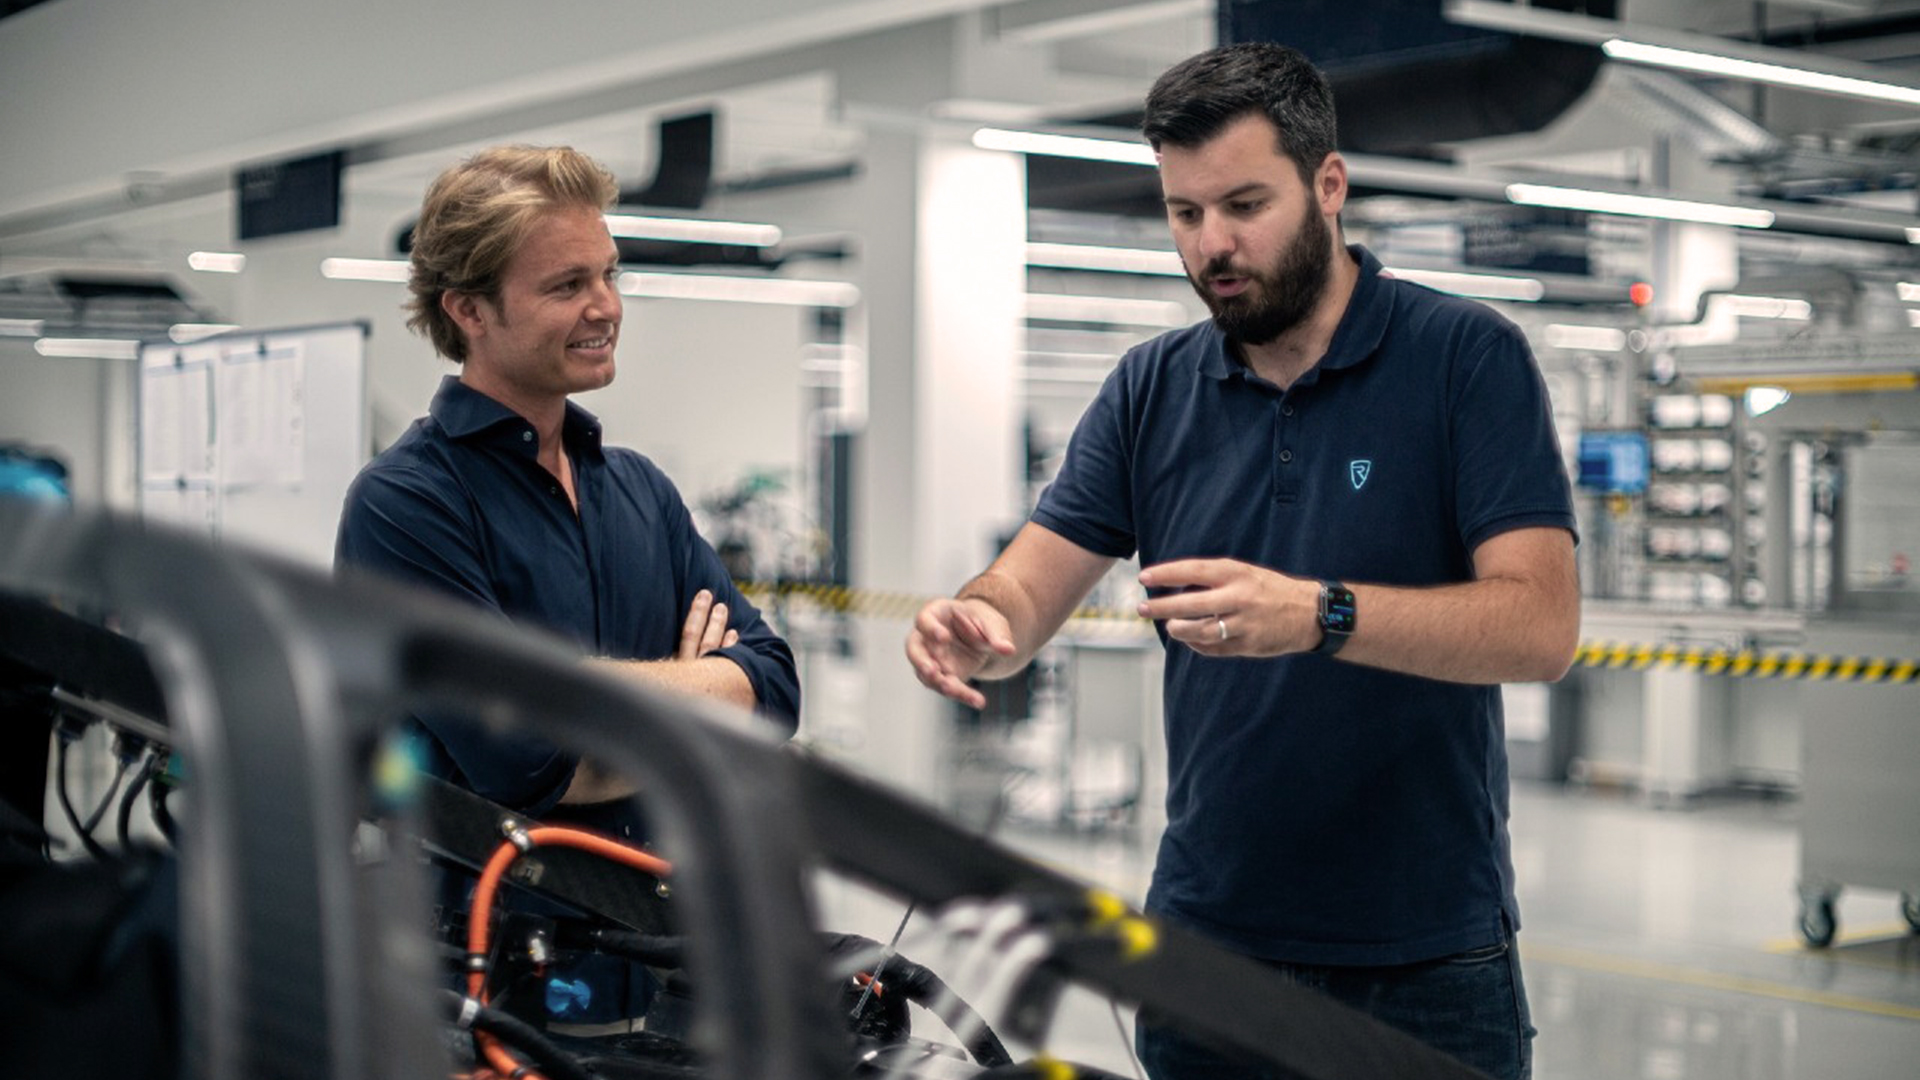 Nico Rosberg junto a Mate Rimac, el creador de su nuevo auto completamente eléctrico, que supera los 400 km/h